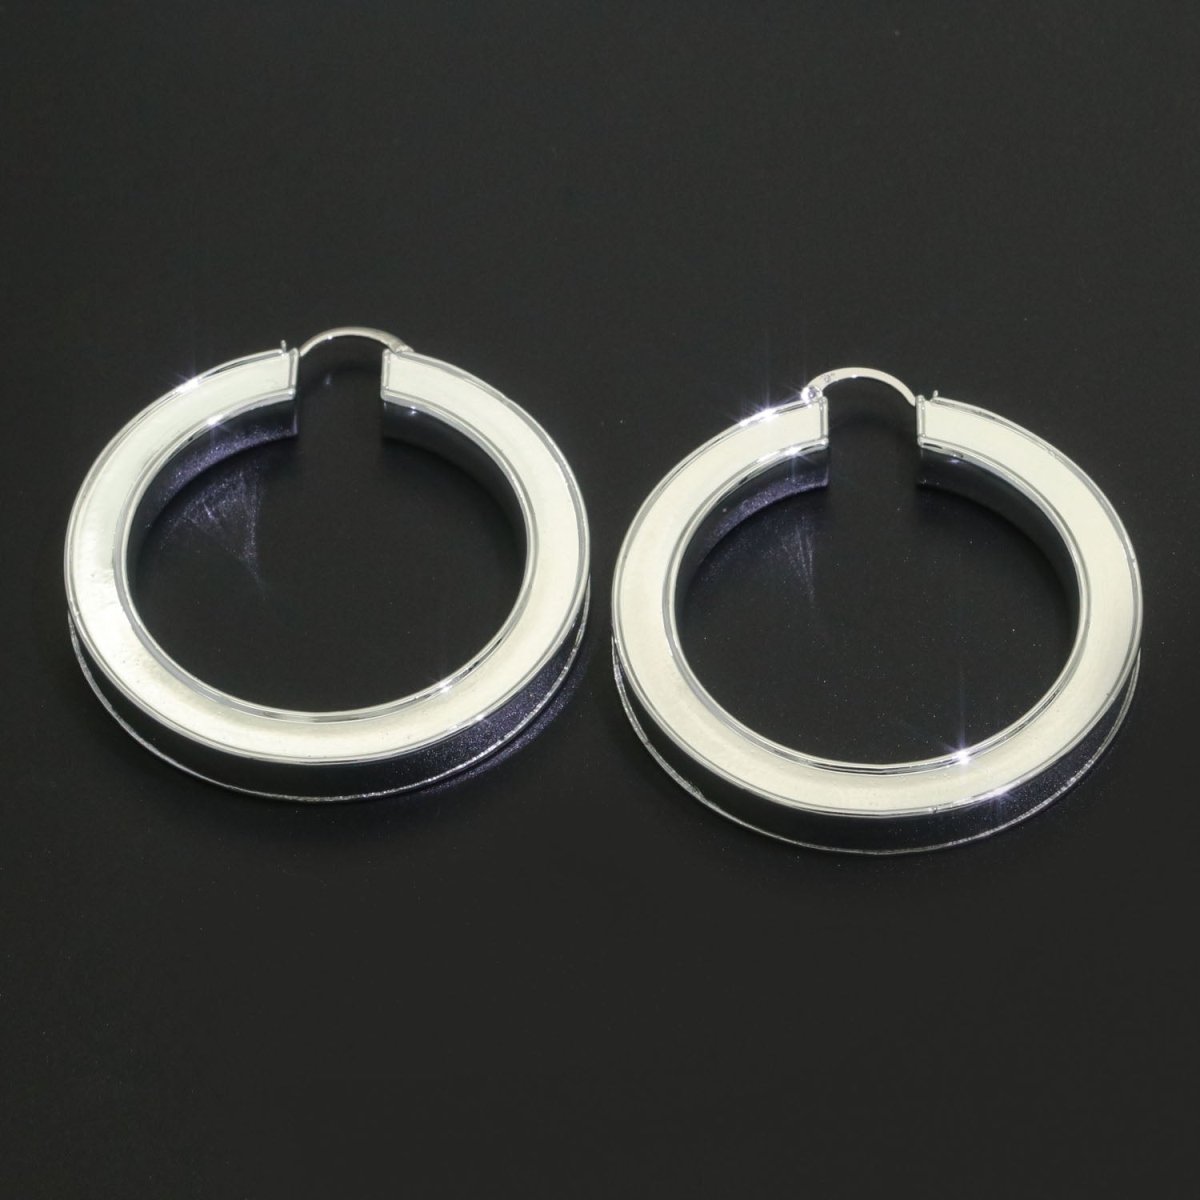 White Enamel hoop earrings Silver 62mm hoops Trend Fashion jewelry, T033 - DLUXCA